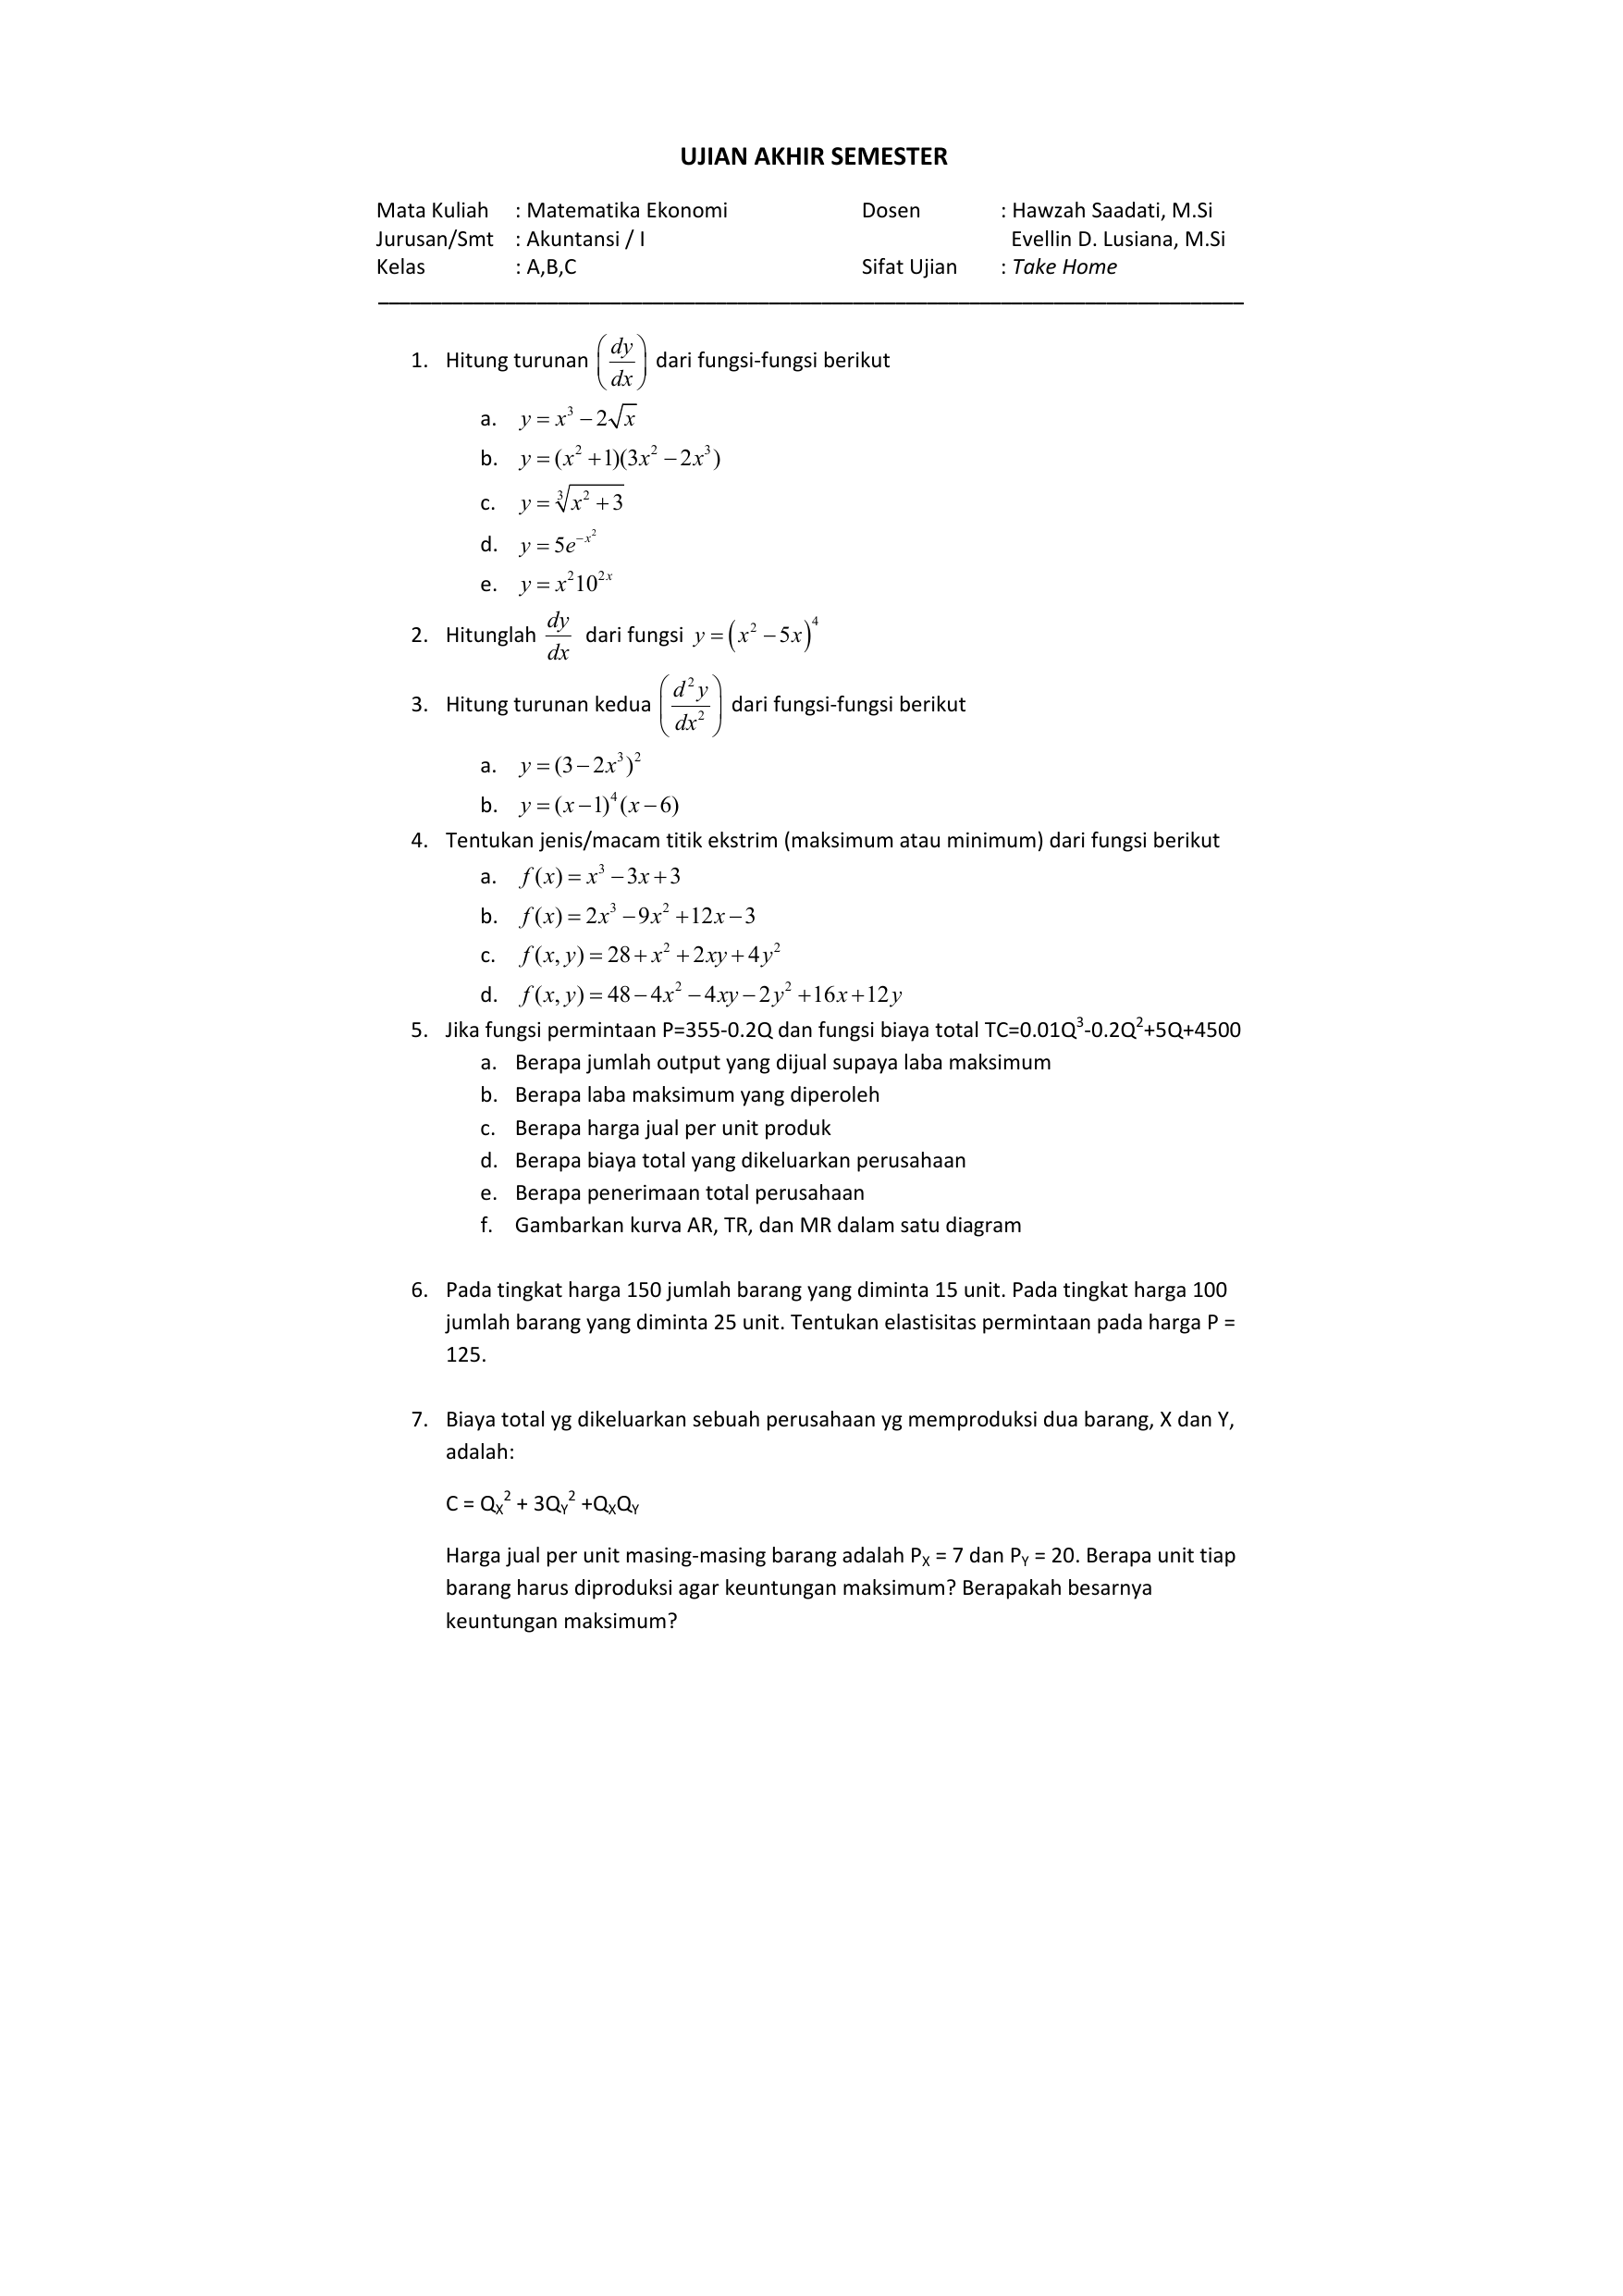 Contoh Soal Untuk Matematika Ekonomi Semester 1 - Ilmu Siswa